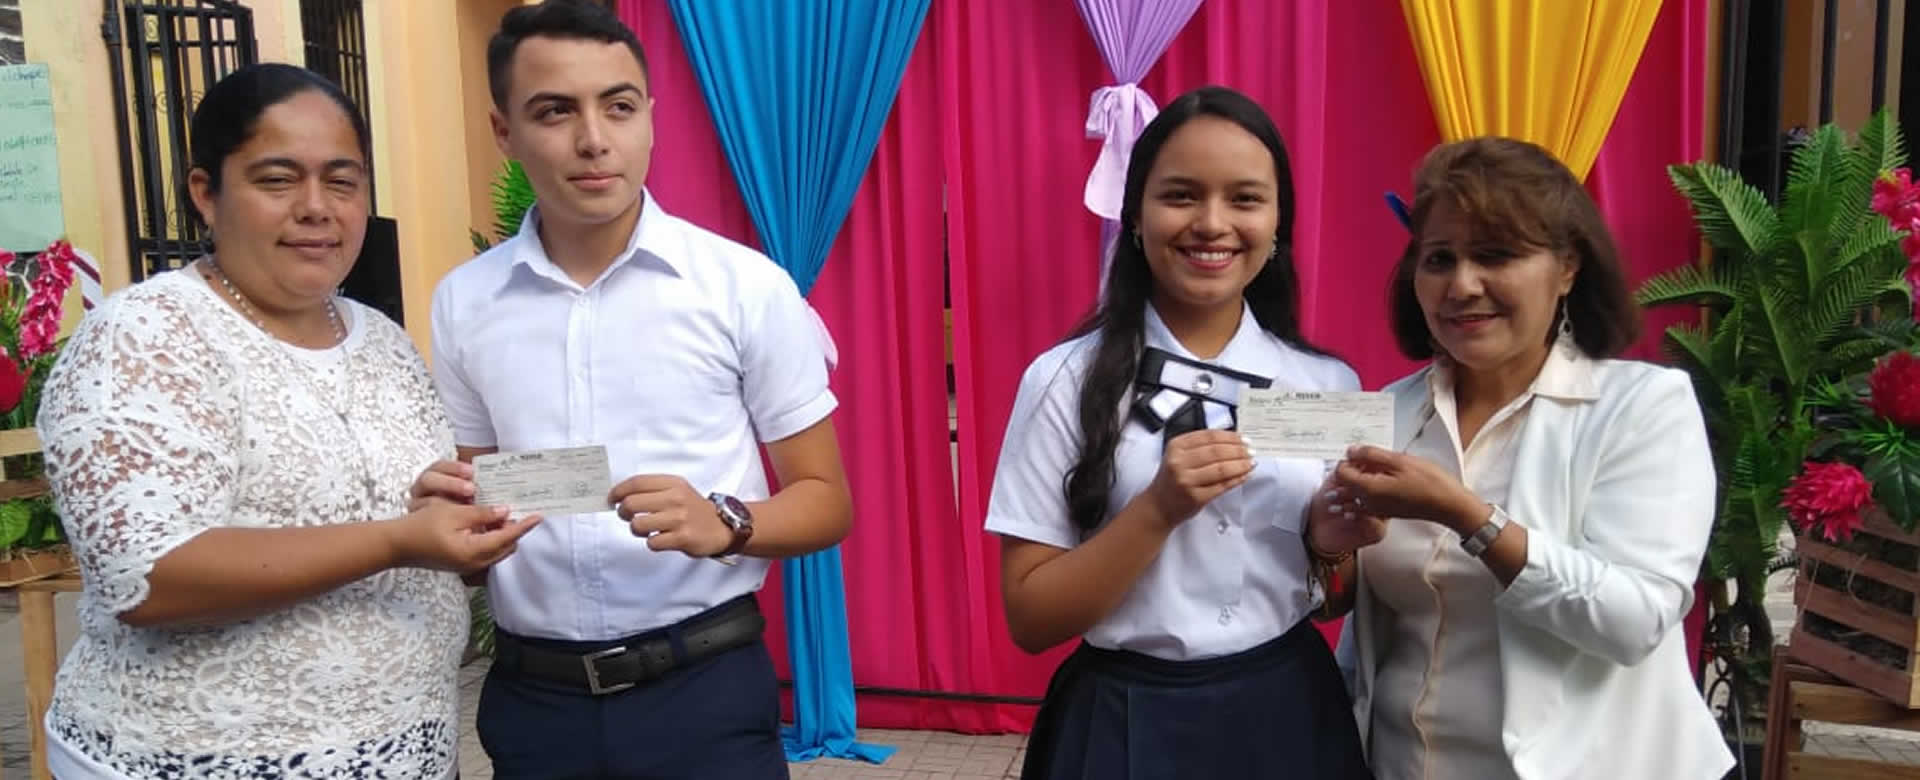 Estudiantes de Somoto retiran su bono de estimulo que brinda el Buen Gobierno Sandinista